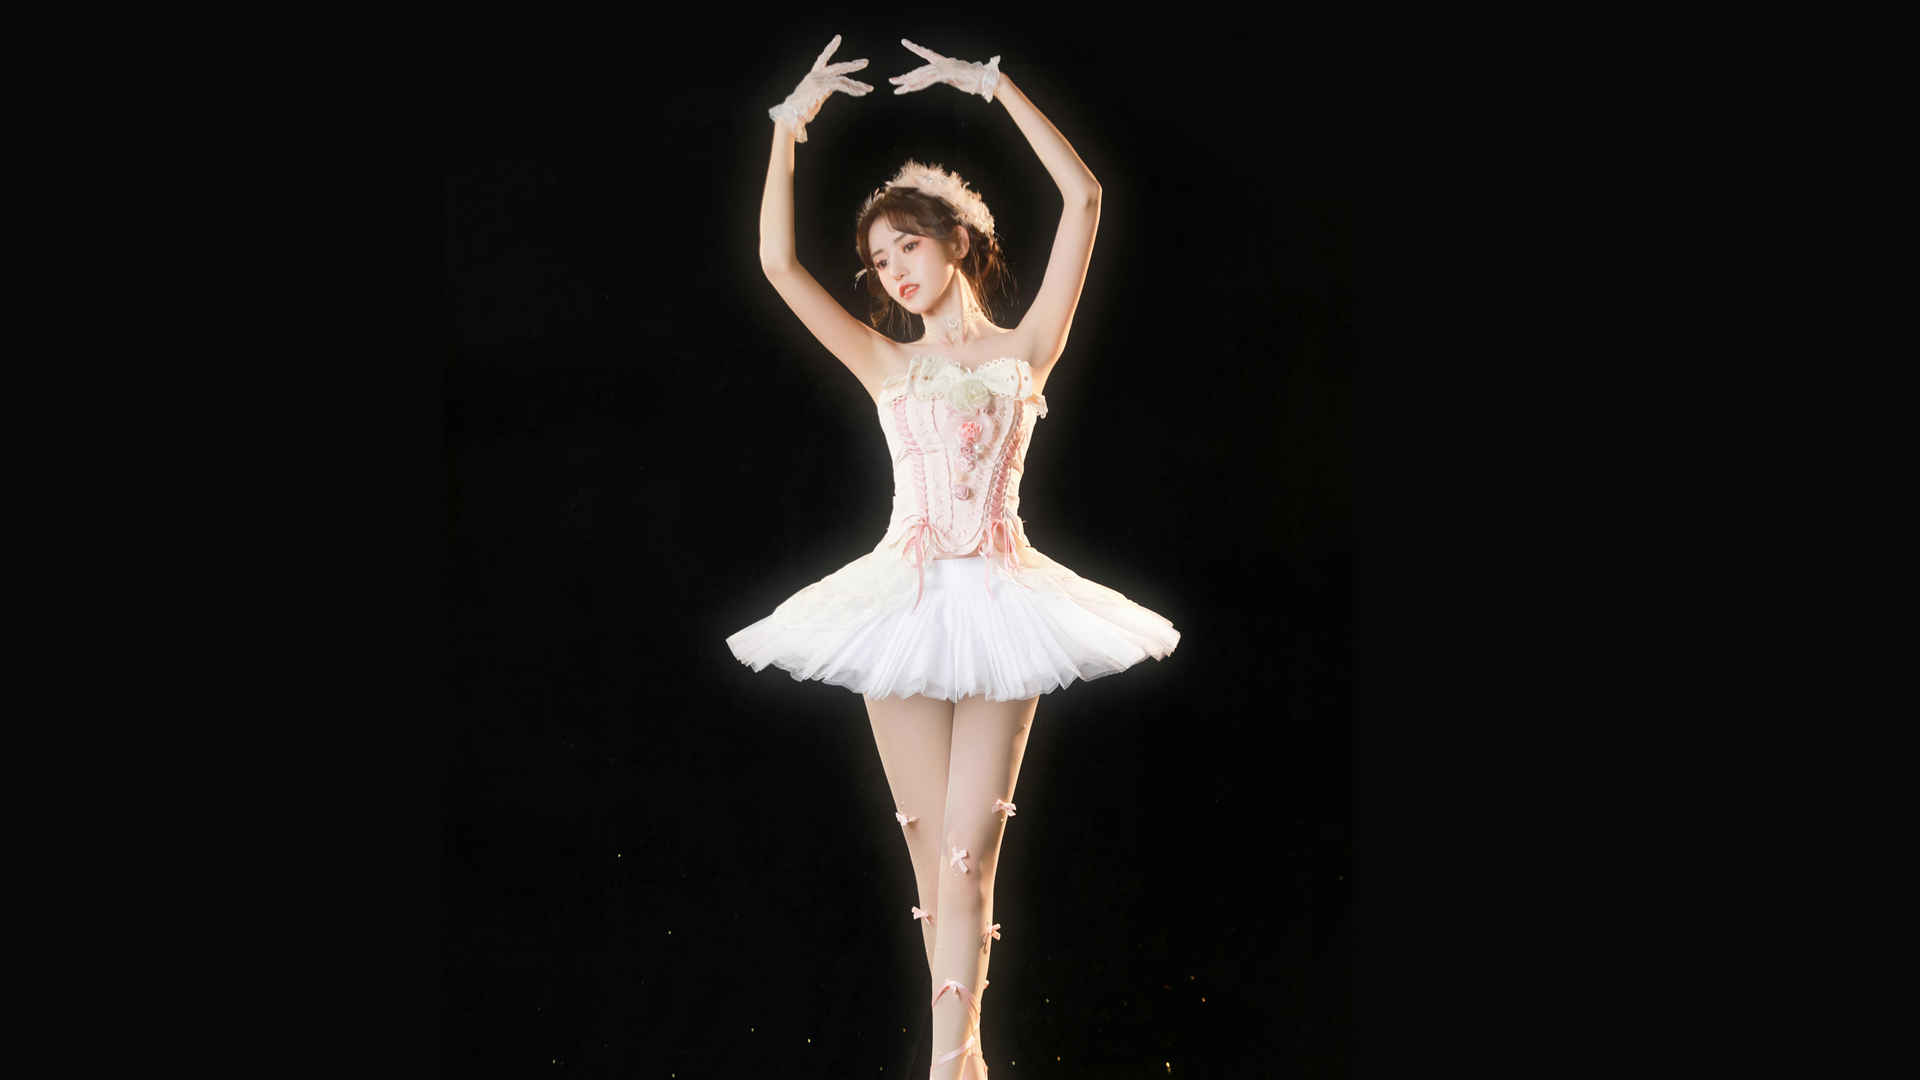 好看身材芭蕾舞美女4k壁纸